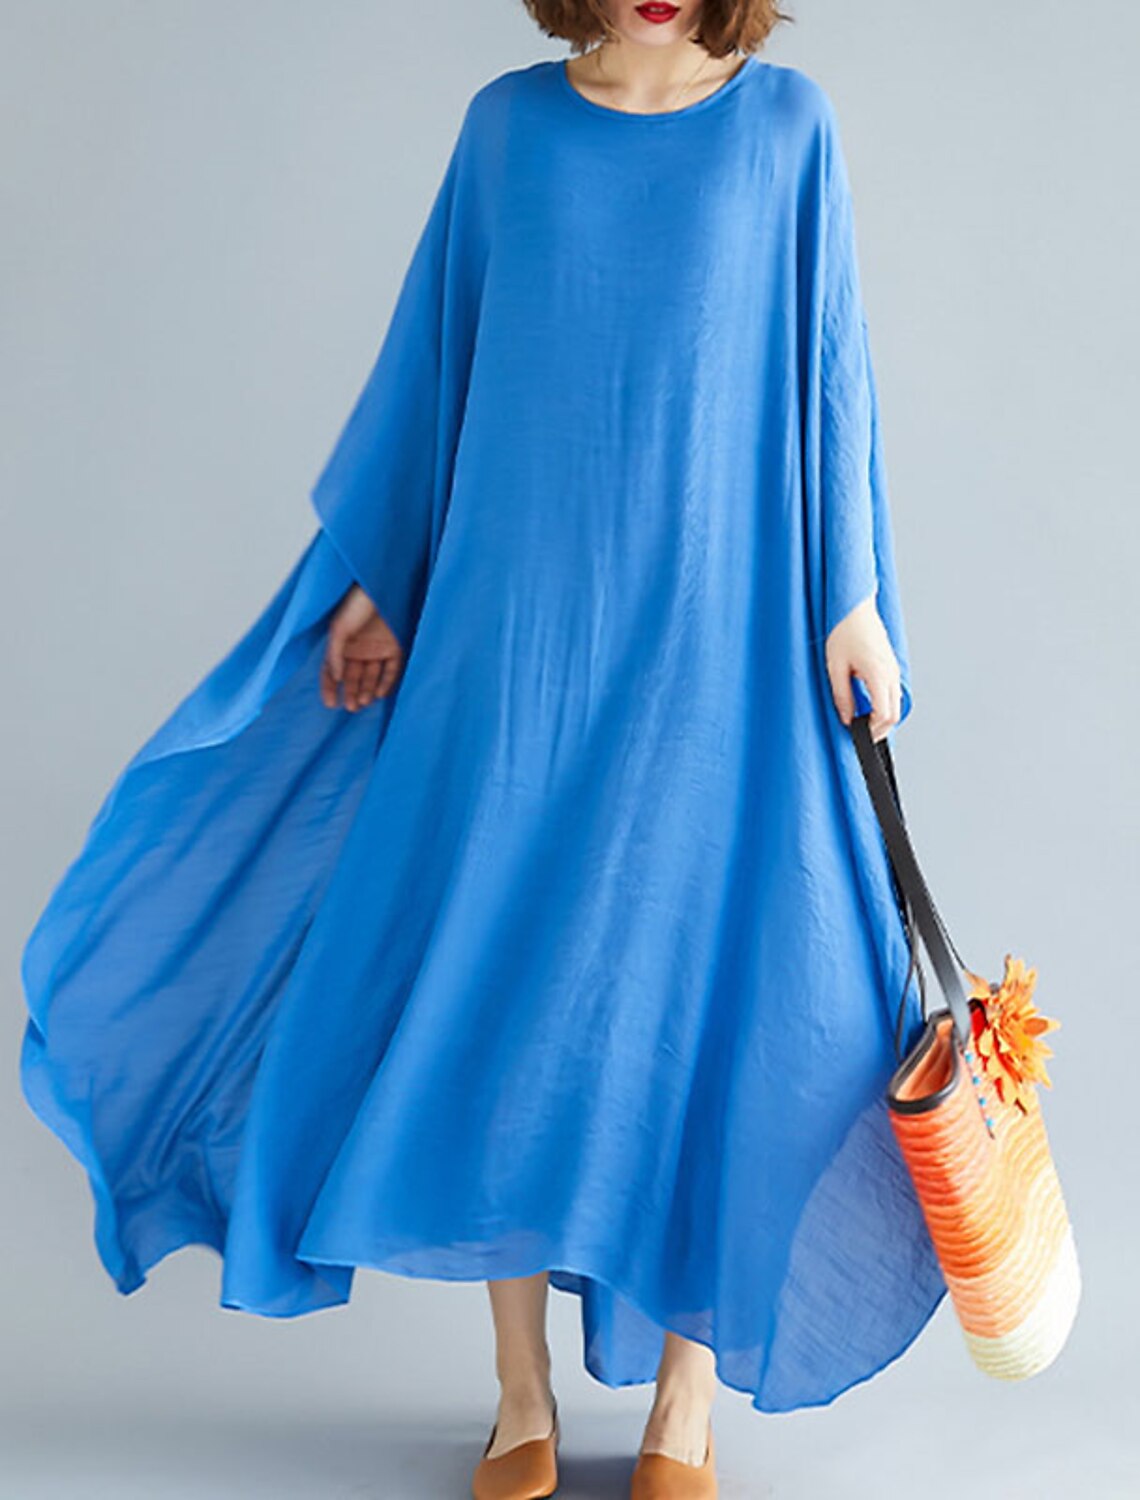 Women's A Line Dress Maxi long Dress Blue Light gray Long Sleeve 